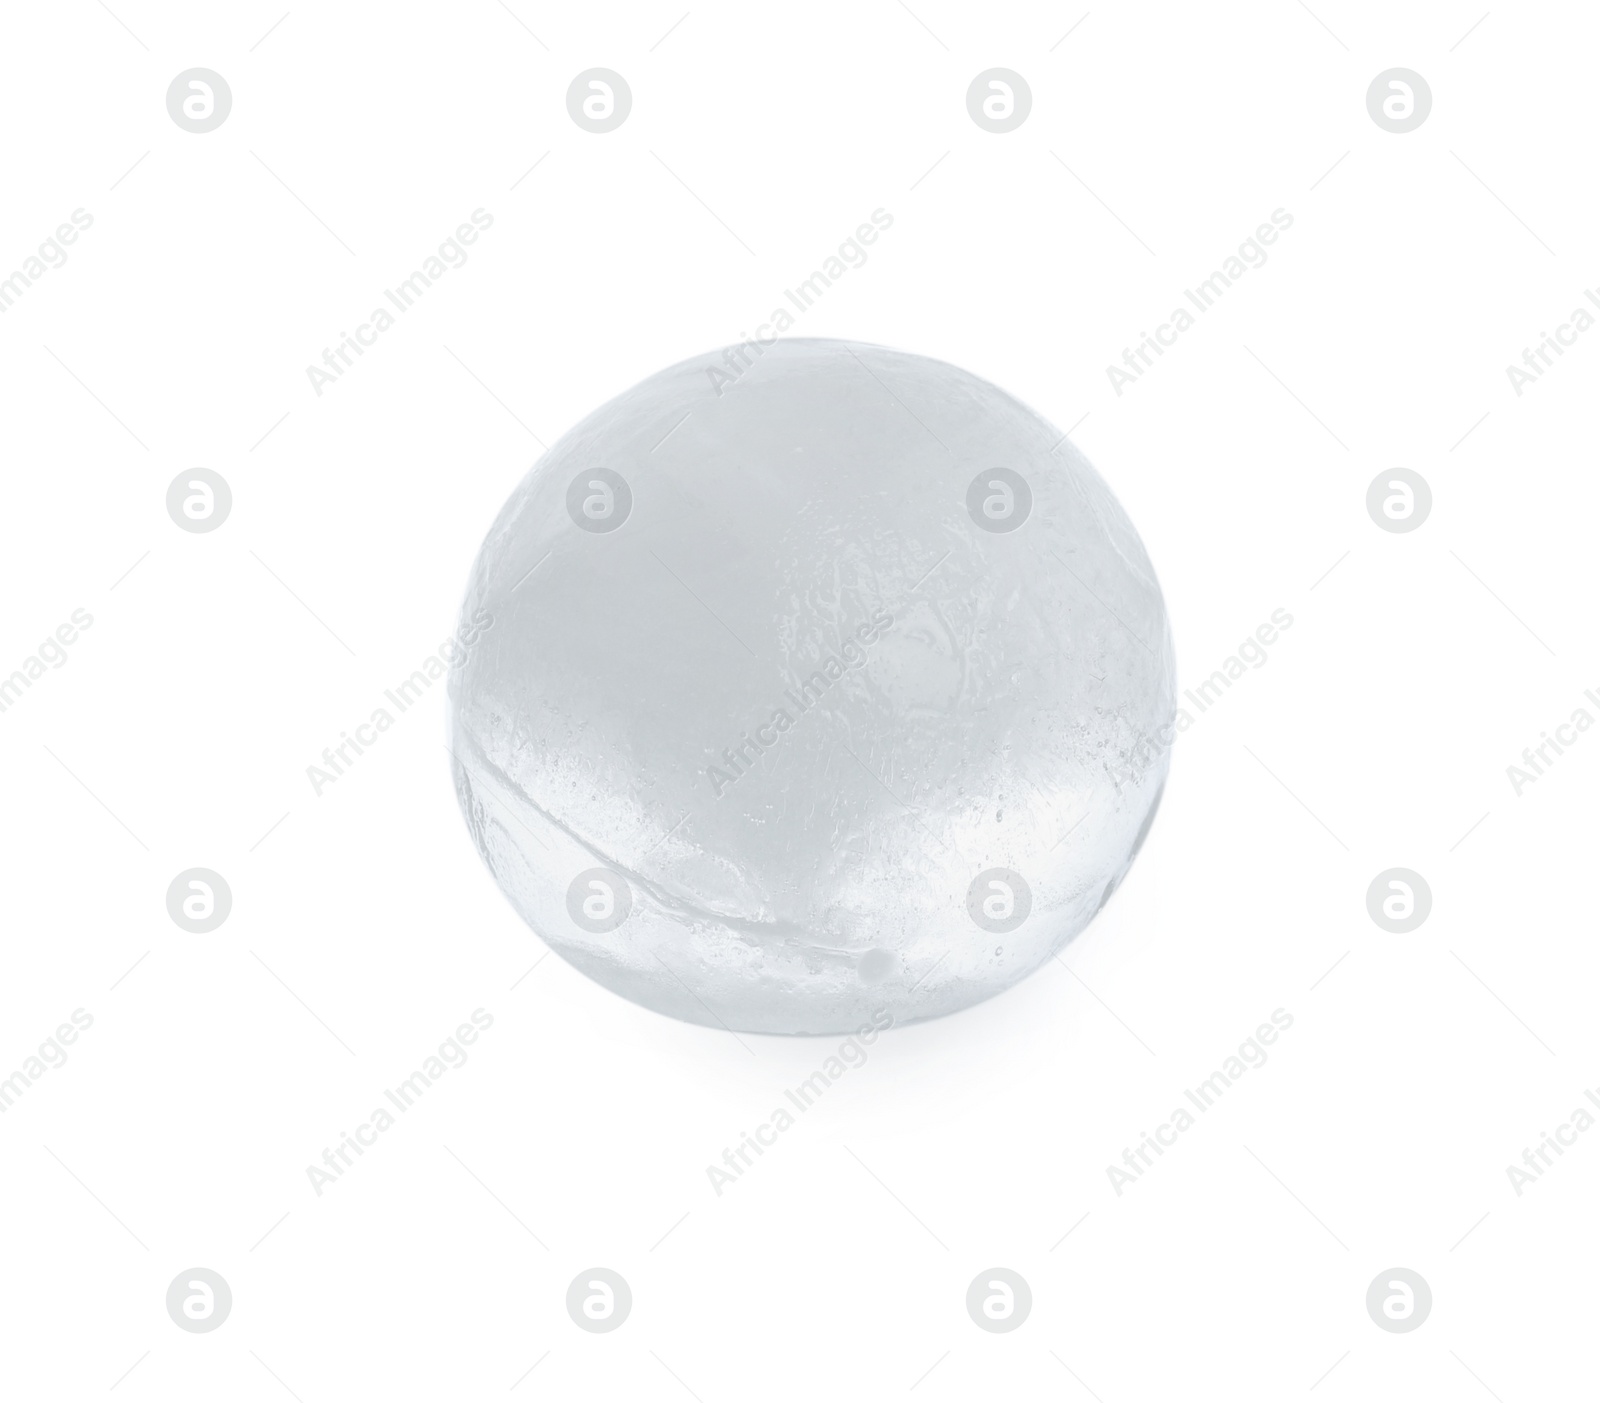 Photo of One melting ice ball isolated on white